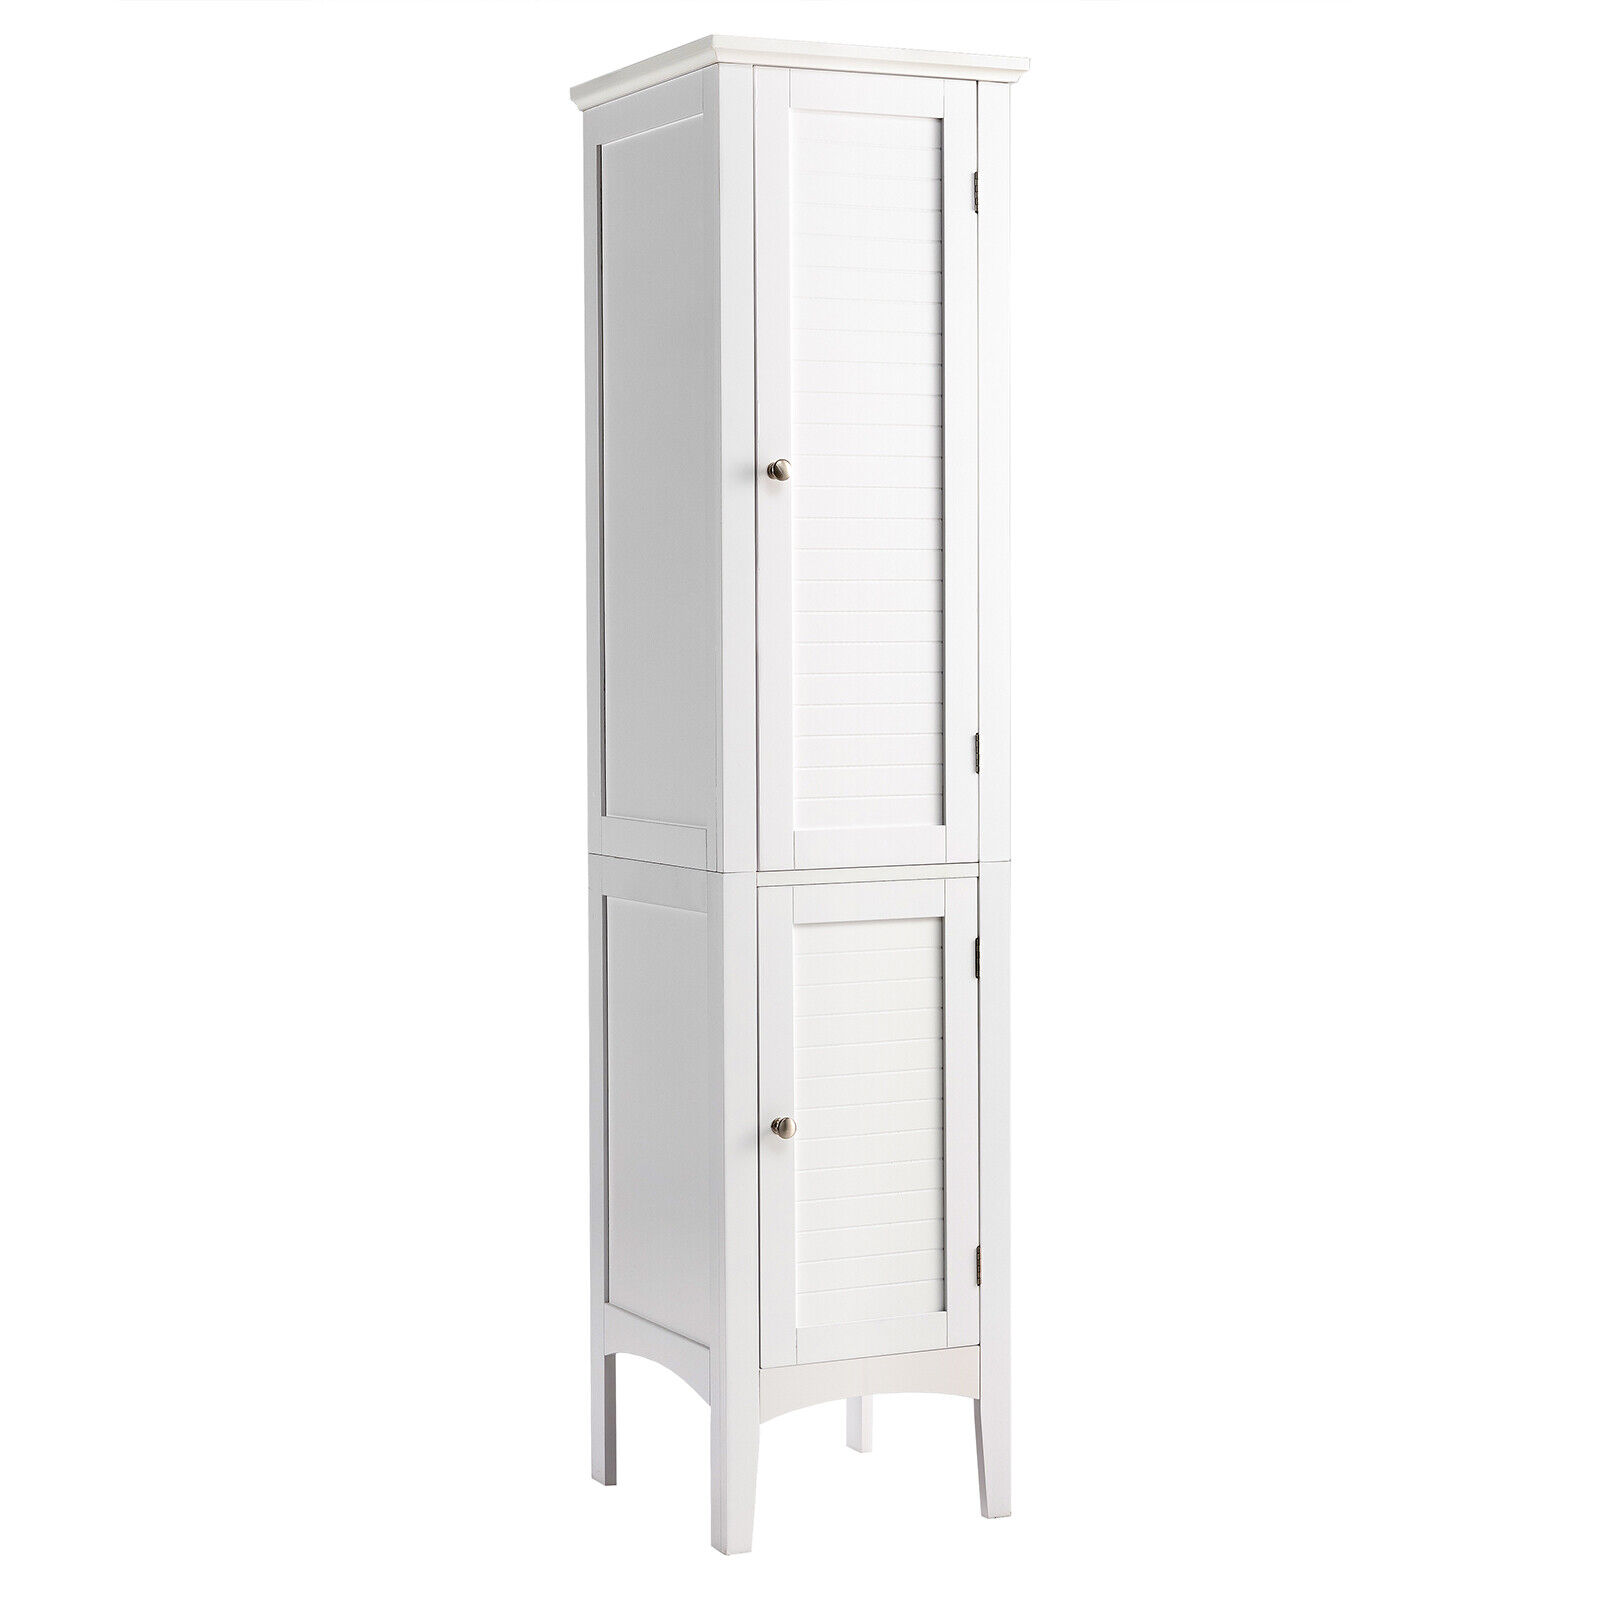 2-Door 160cm High Freestanding Bathroom Cabinet with 5-Tier Shelves-White